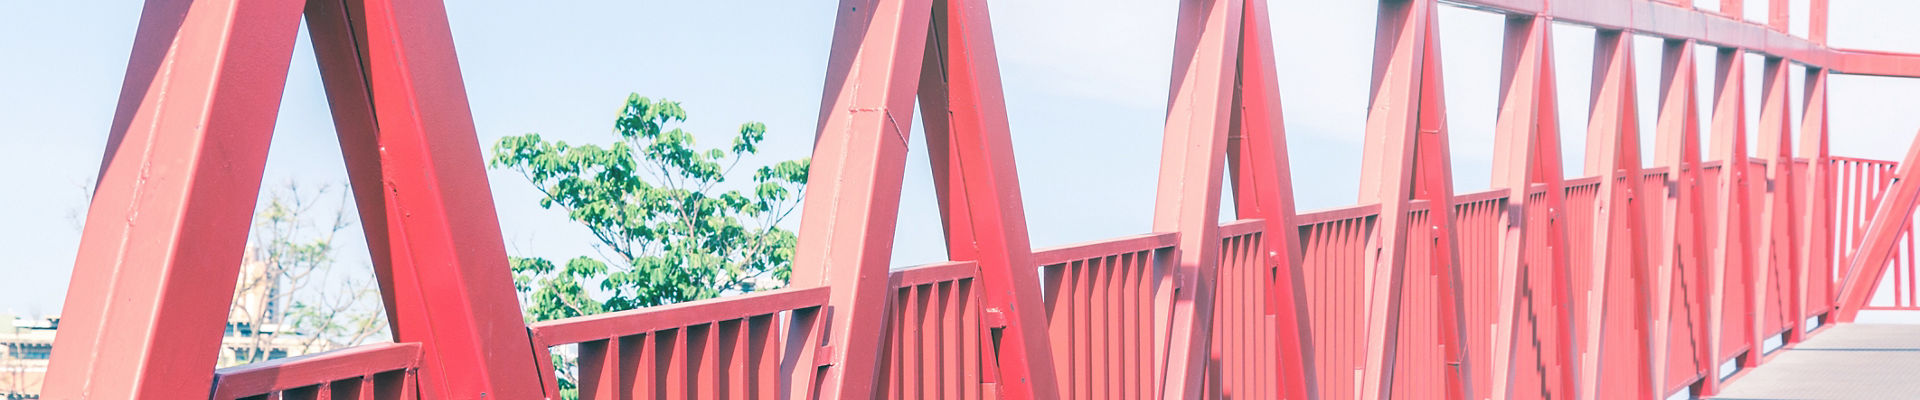 Iron truss footbridge painted in vivid red